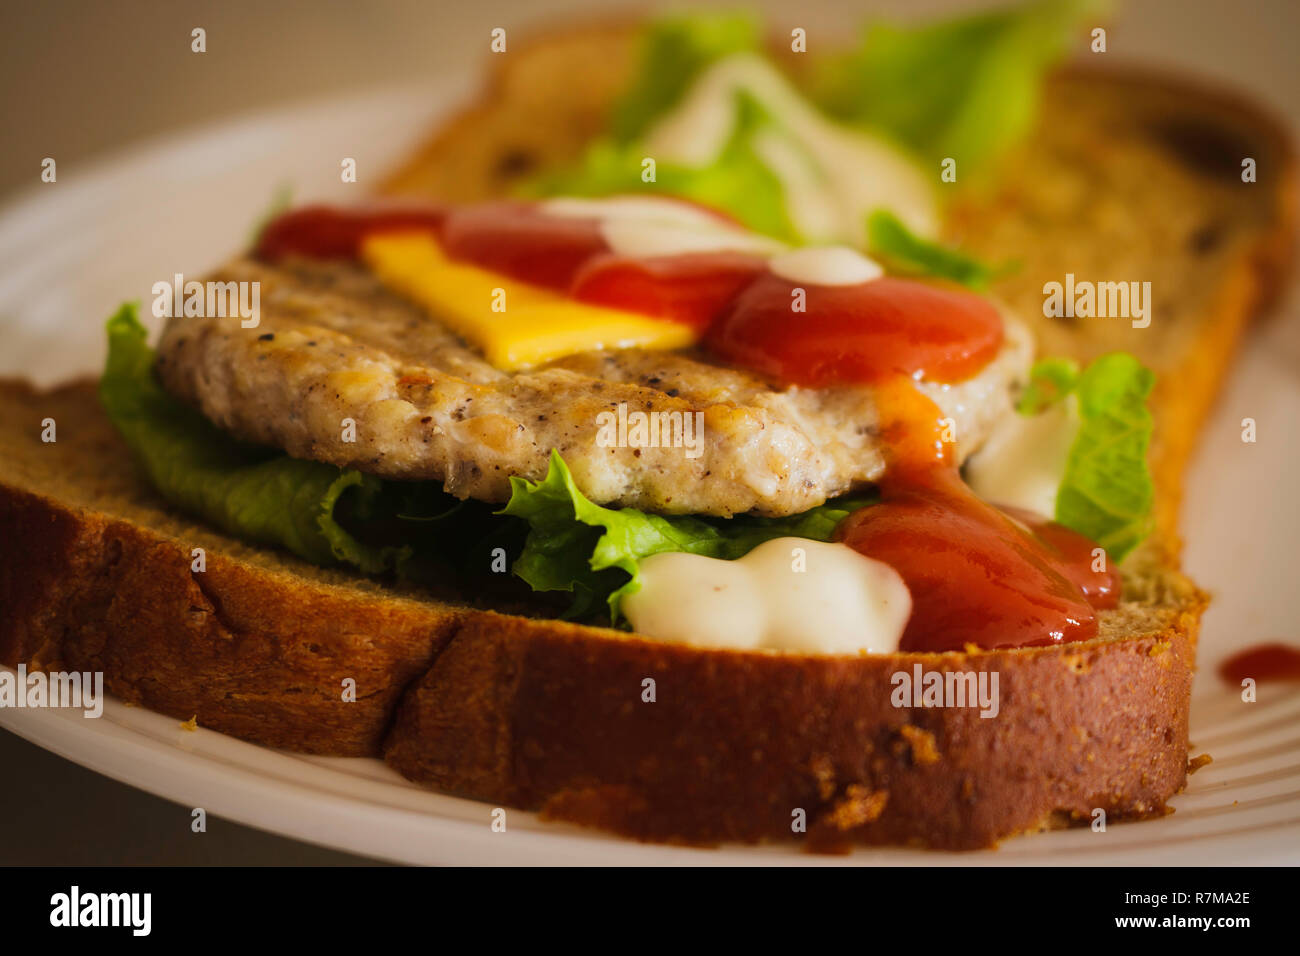 Hamburger fatto da grano integrale a fette di pane, formaggio, lattuga e condito con ketchup e condimento per insalata Foto Stock